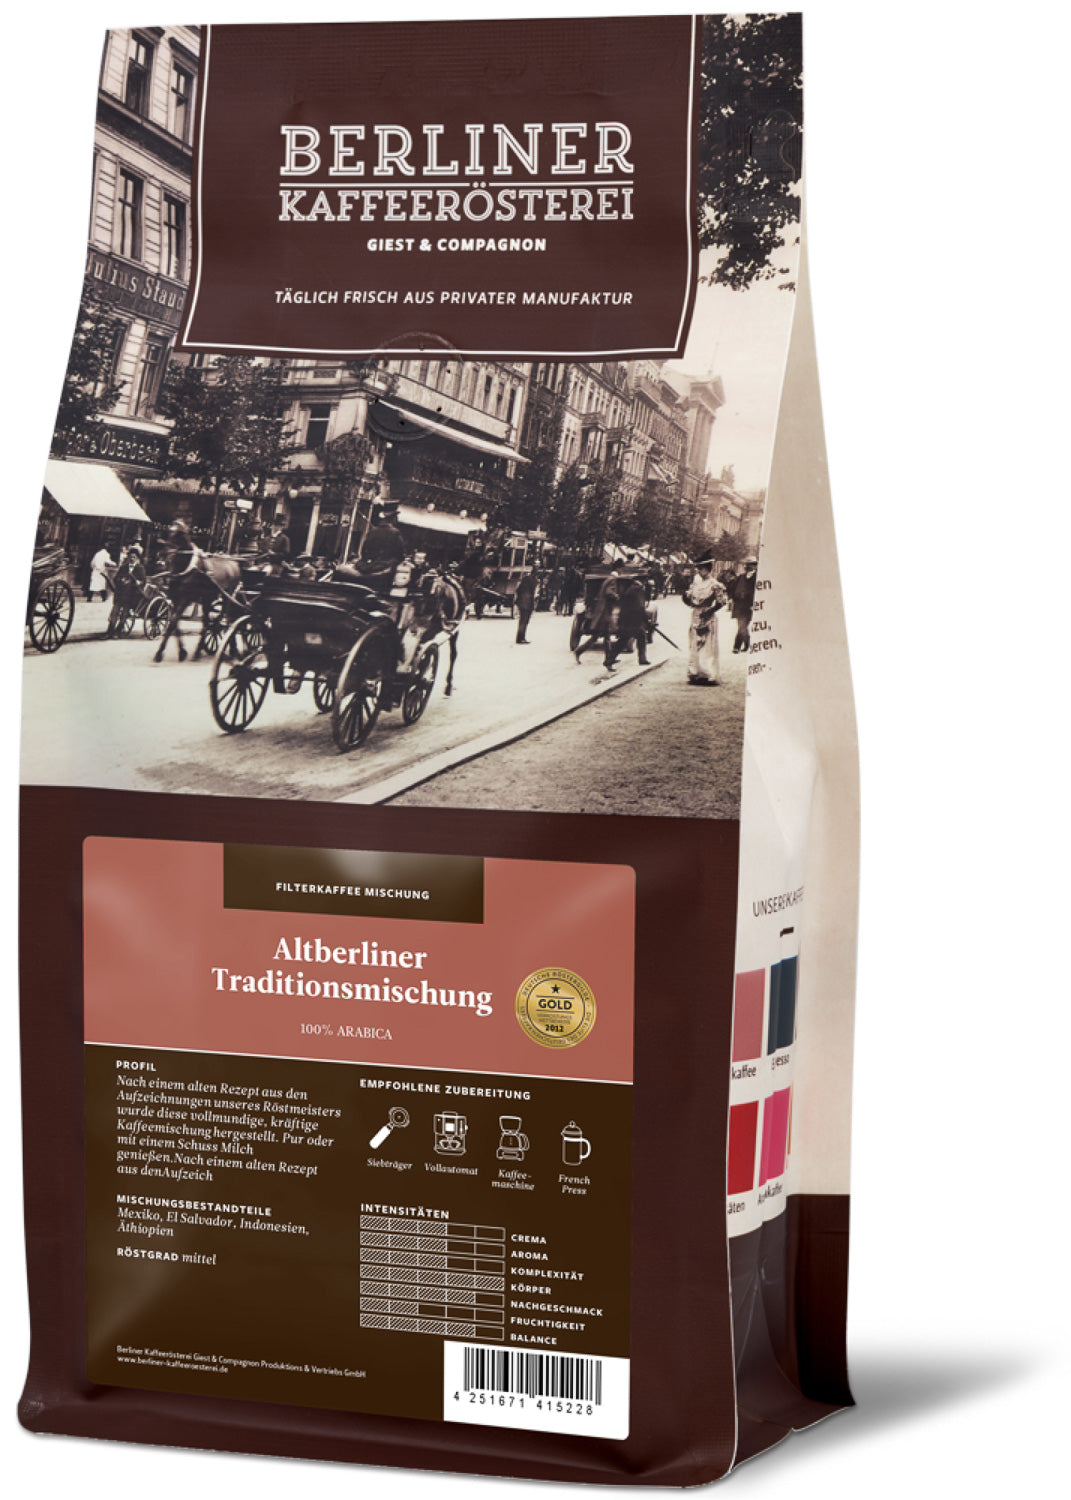 Altberliner Traditionsmischung aus der Kaffeemanufaktur der Berliner Kaffeerösterei - 250g ganze Bohne